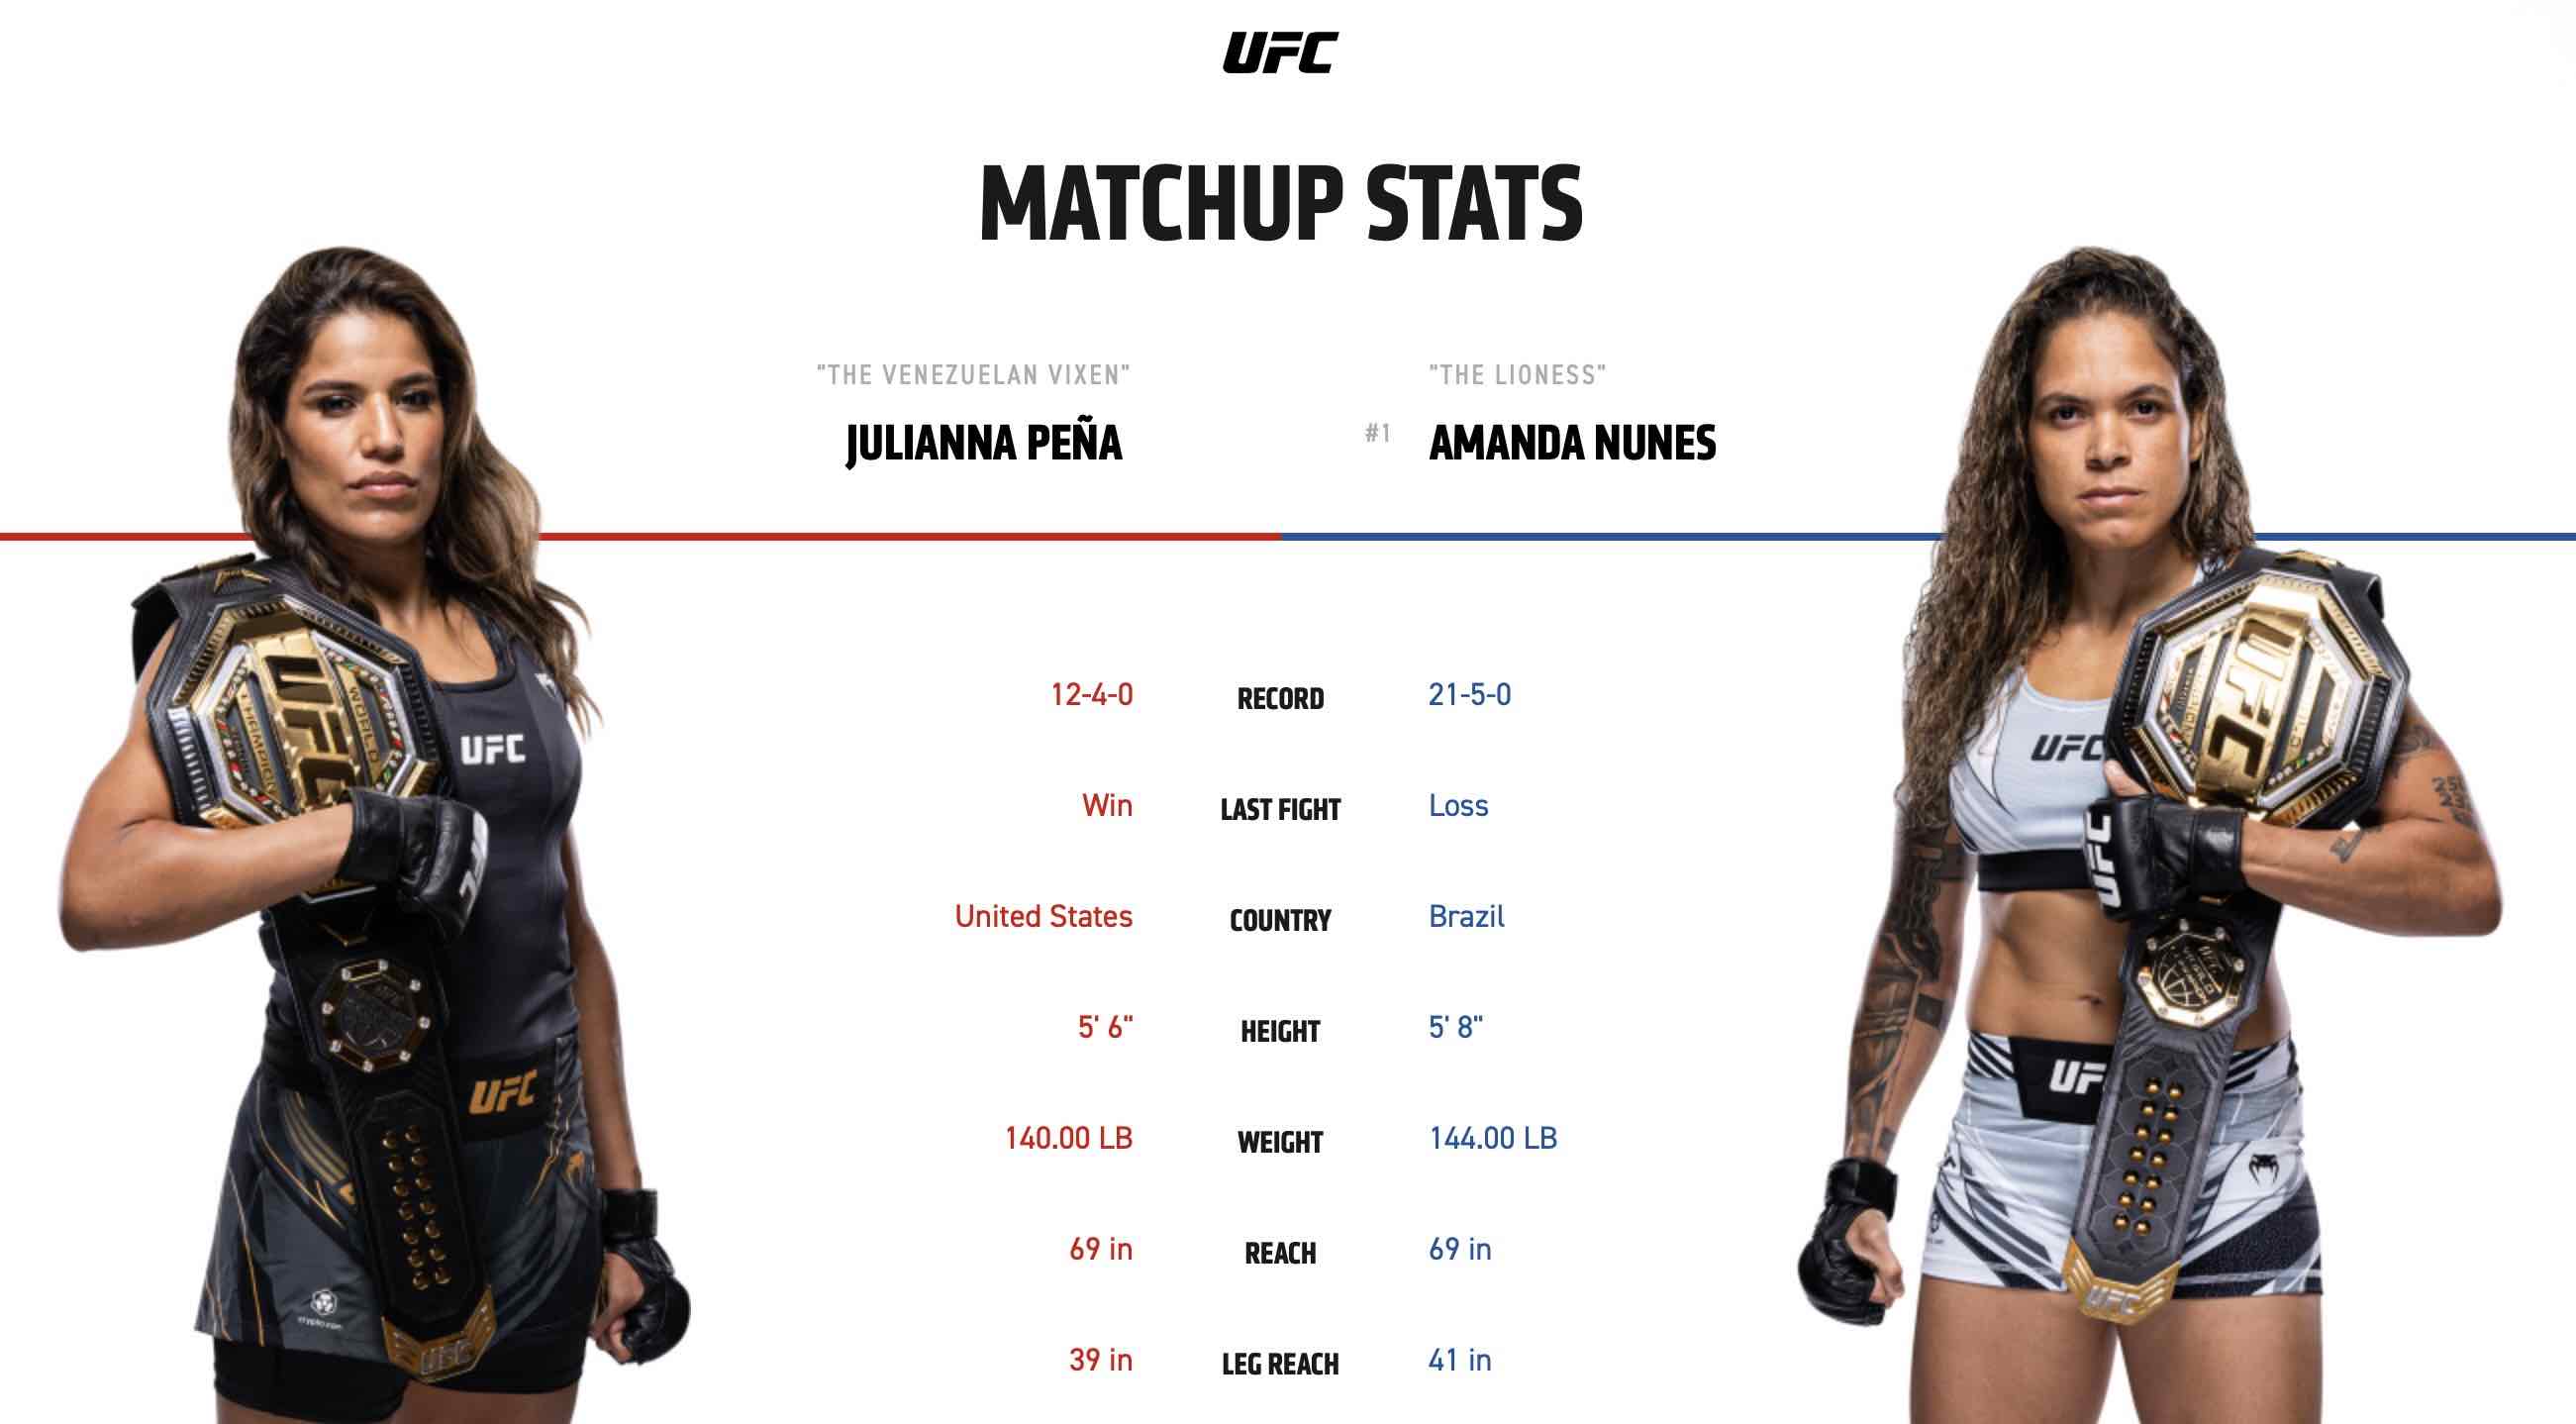 watch UFC 277 Peña vs Nunes